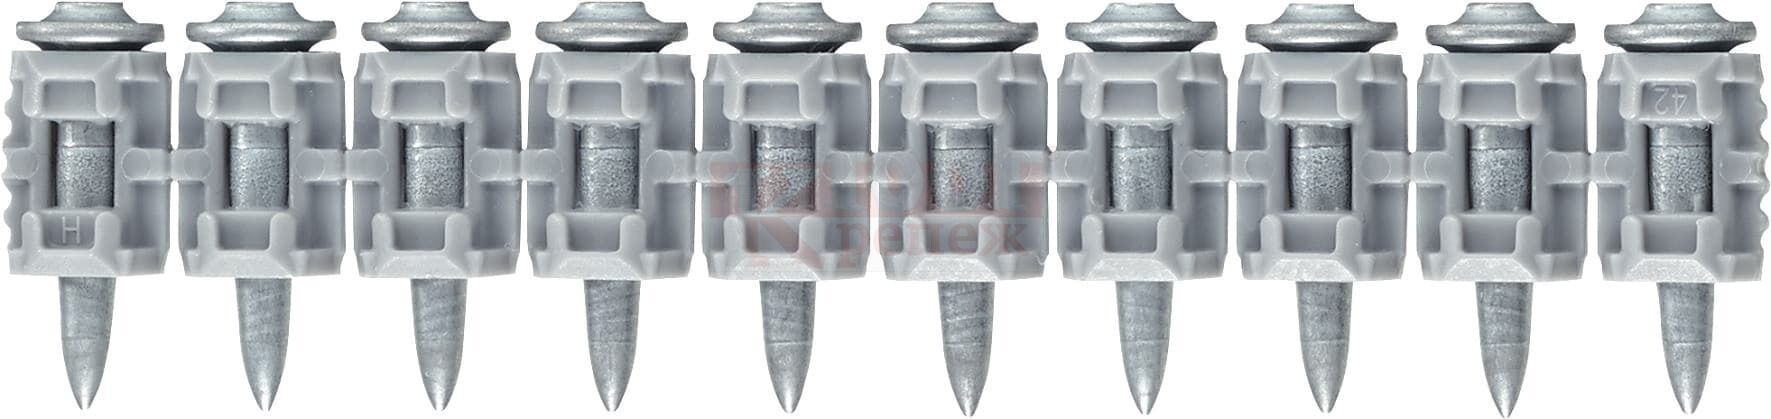 X-P 20 G3 MX Гвоздь монтажный по бетону HILTI для GX 120 оц. сталь, 20x3 мм 3xGC 42 (3600 шт.)